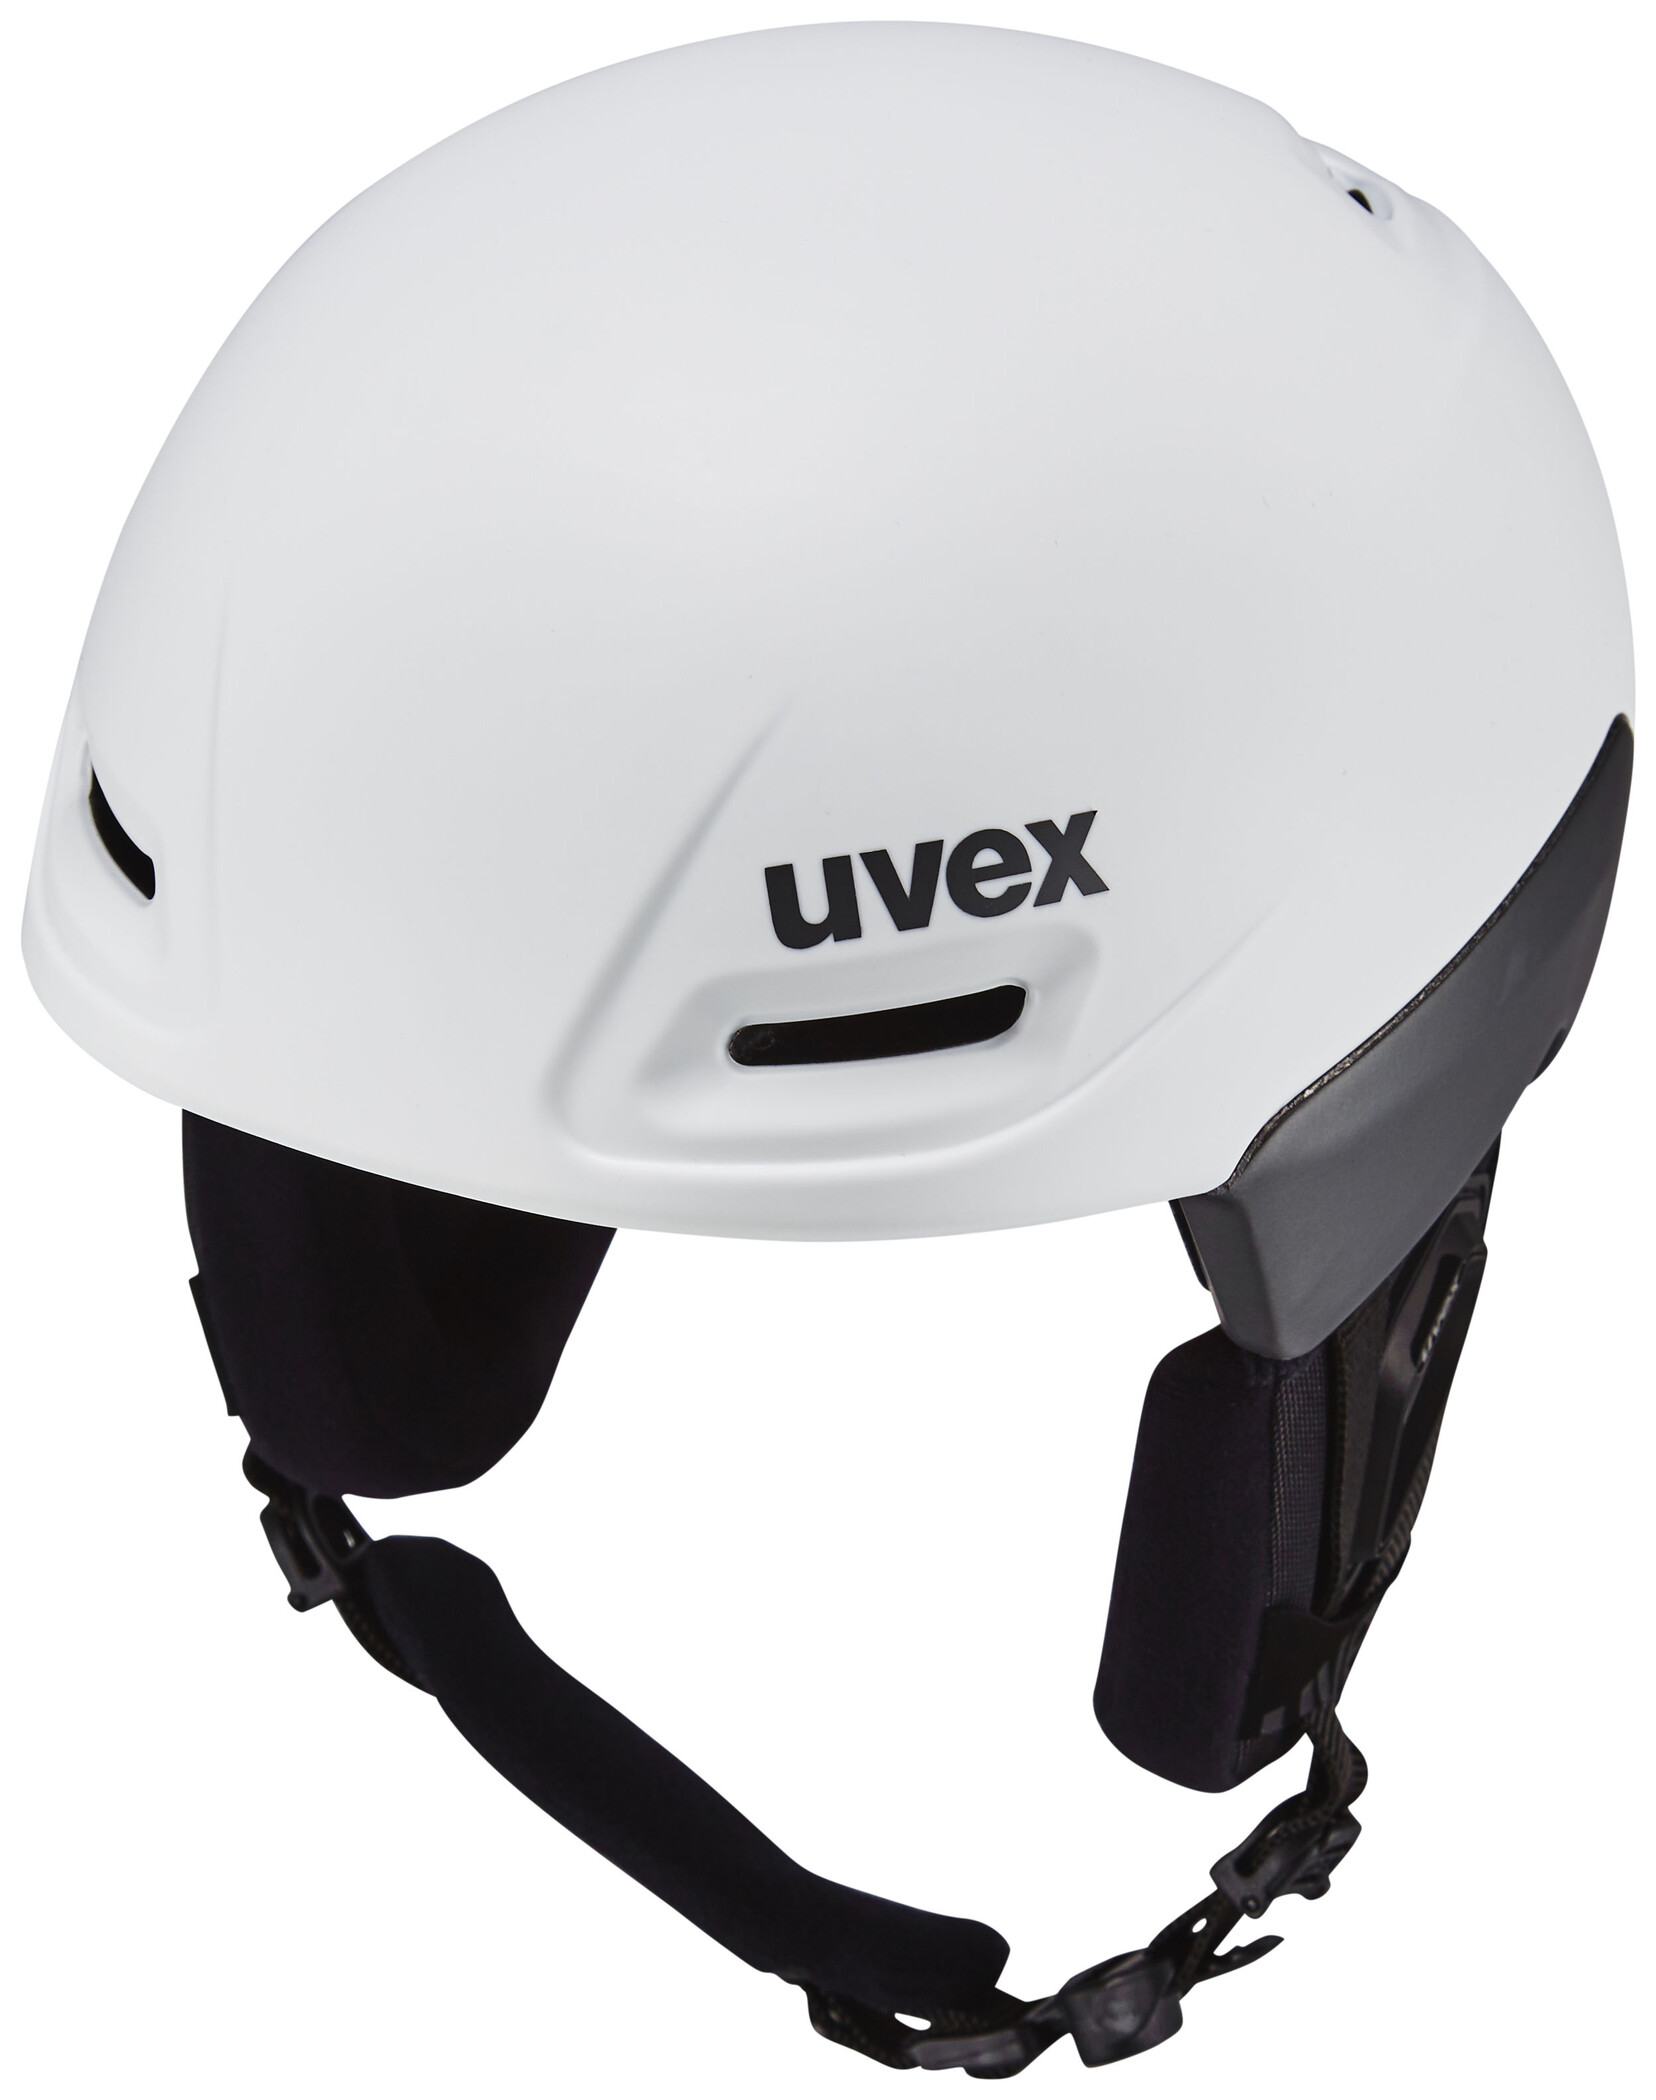 UVEX jimm octo+ Helm weiß/grau